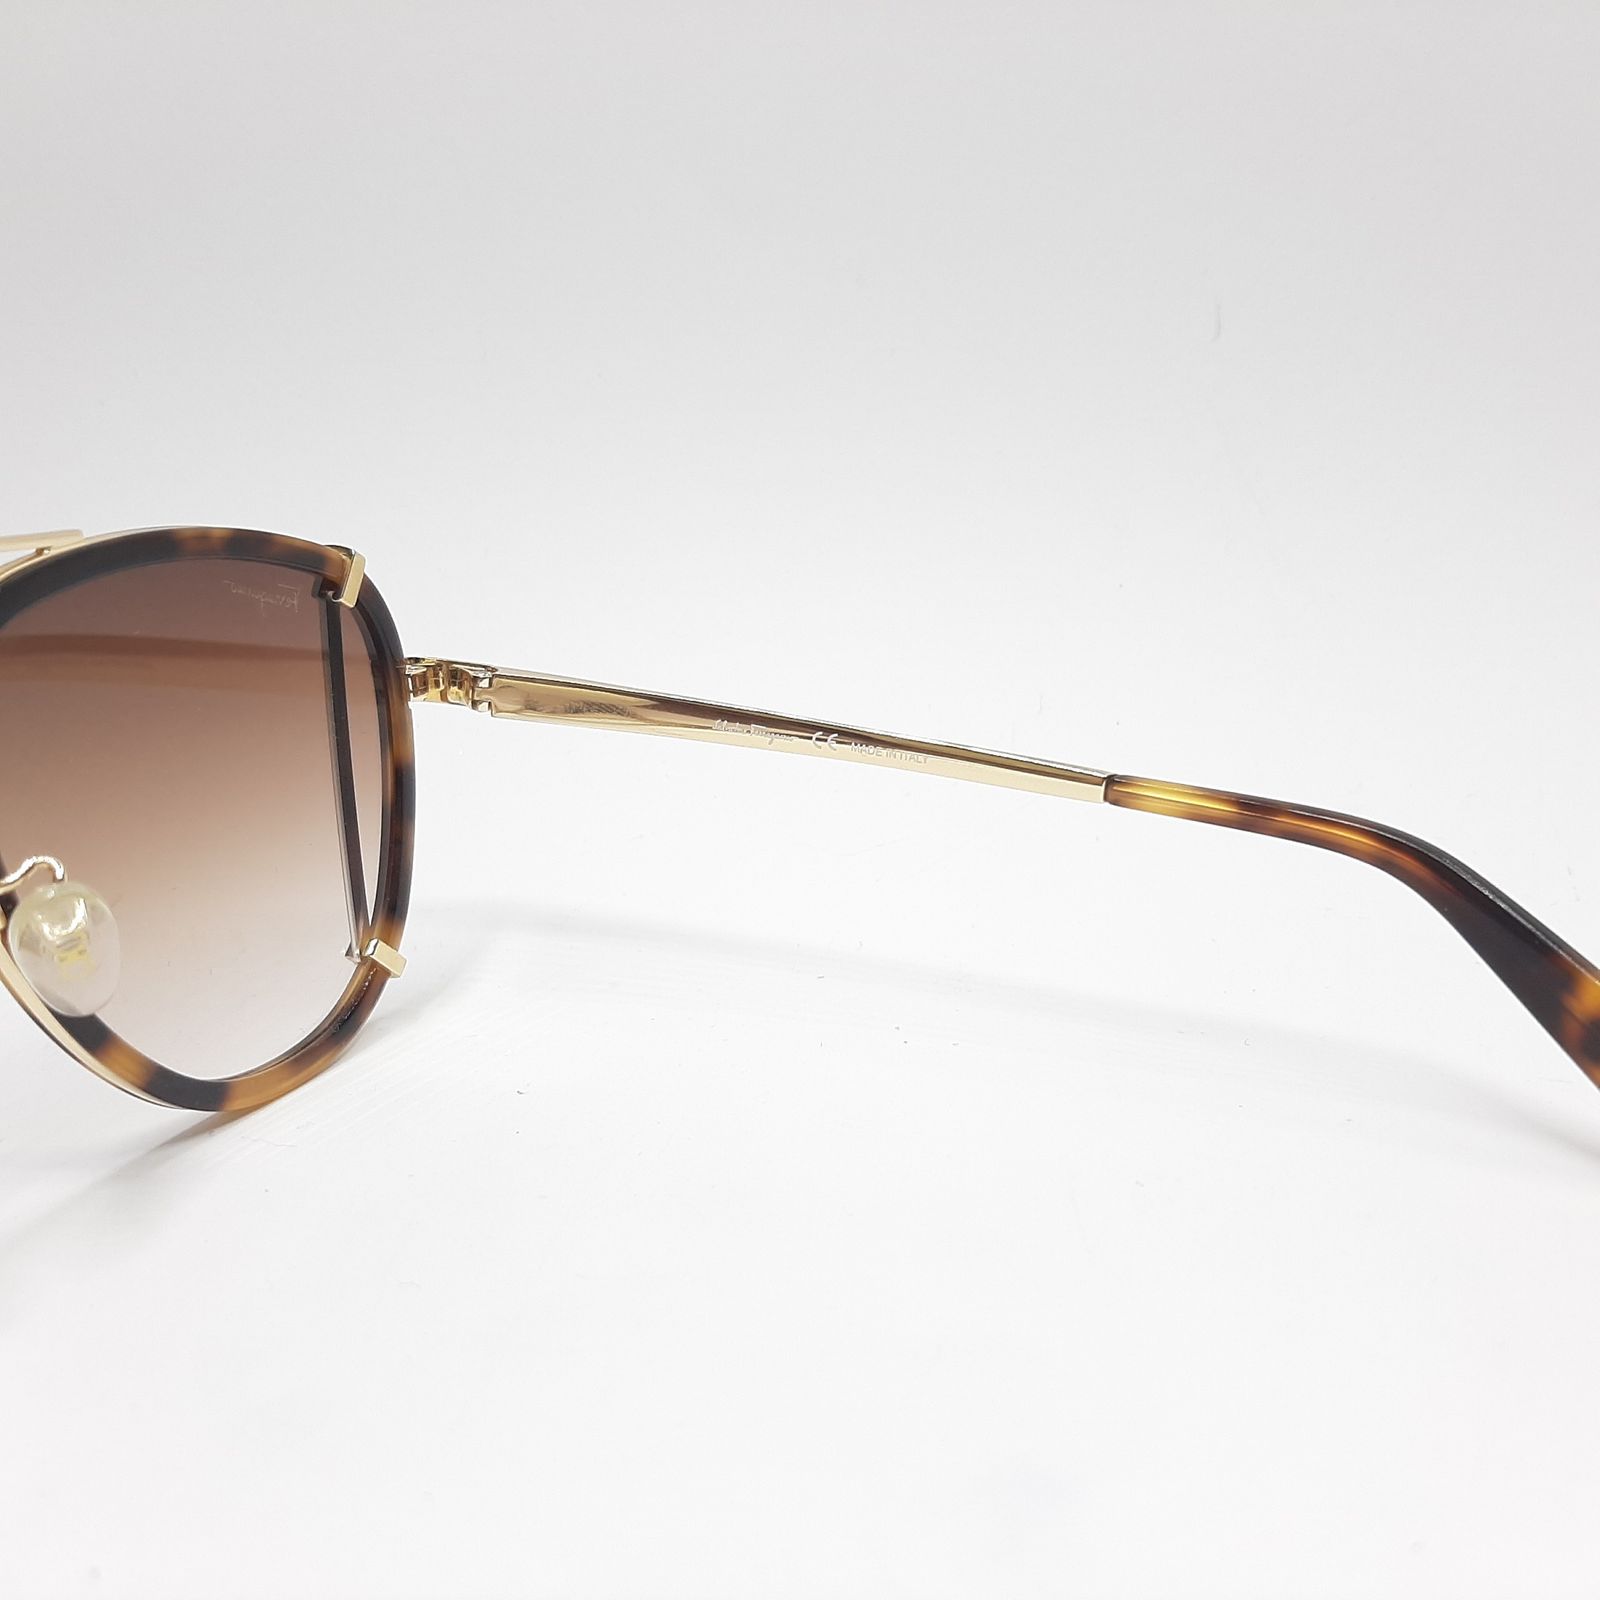 عینک آفتابی سالواتوره فراگامو مدل SF132c2 -  - 6